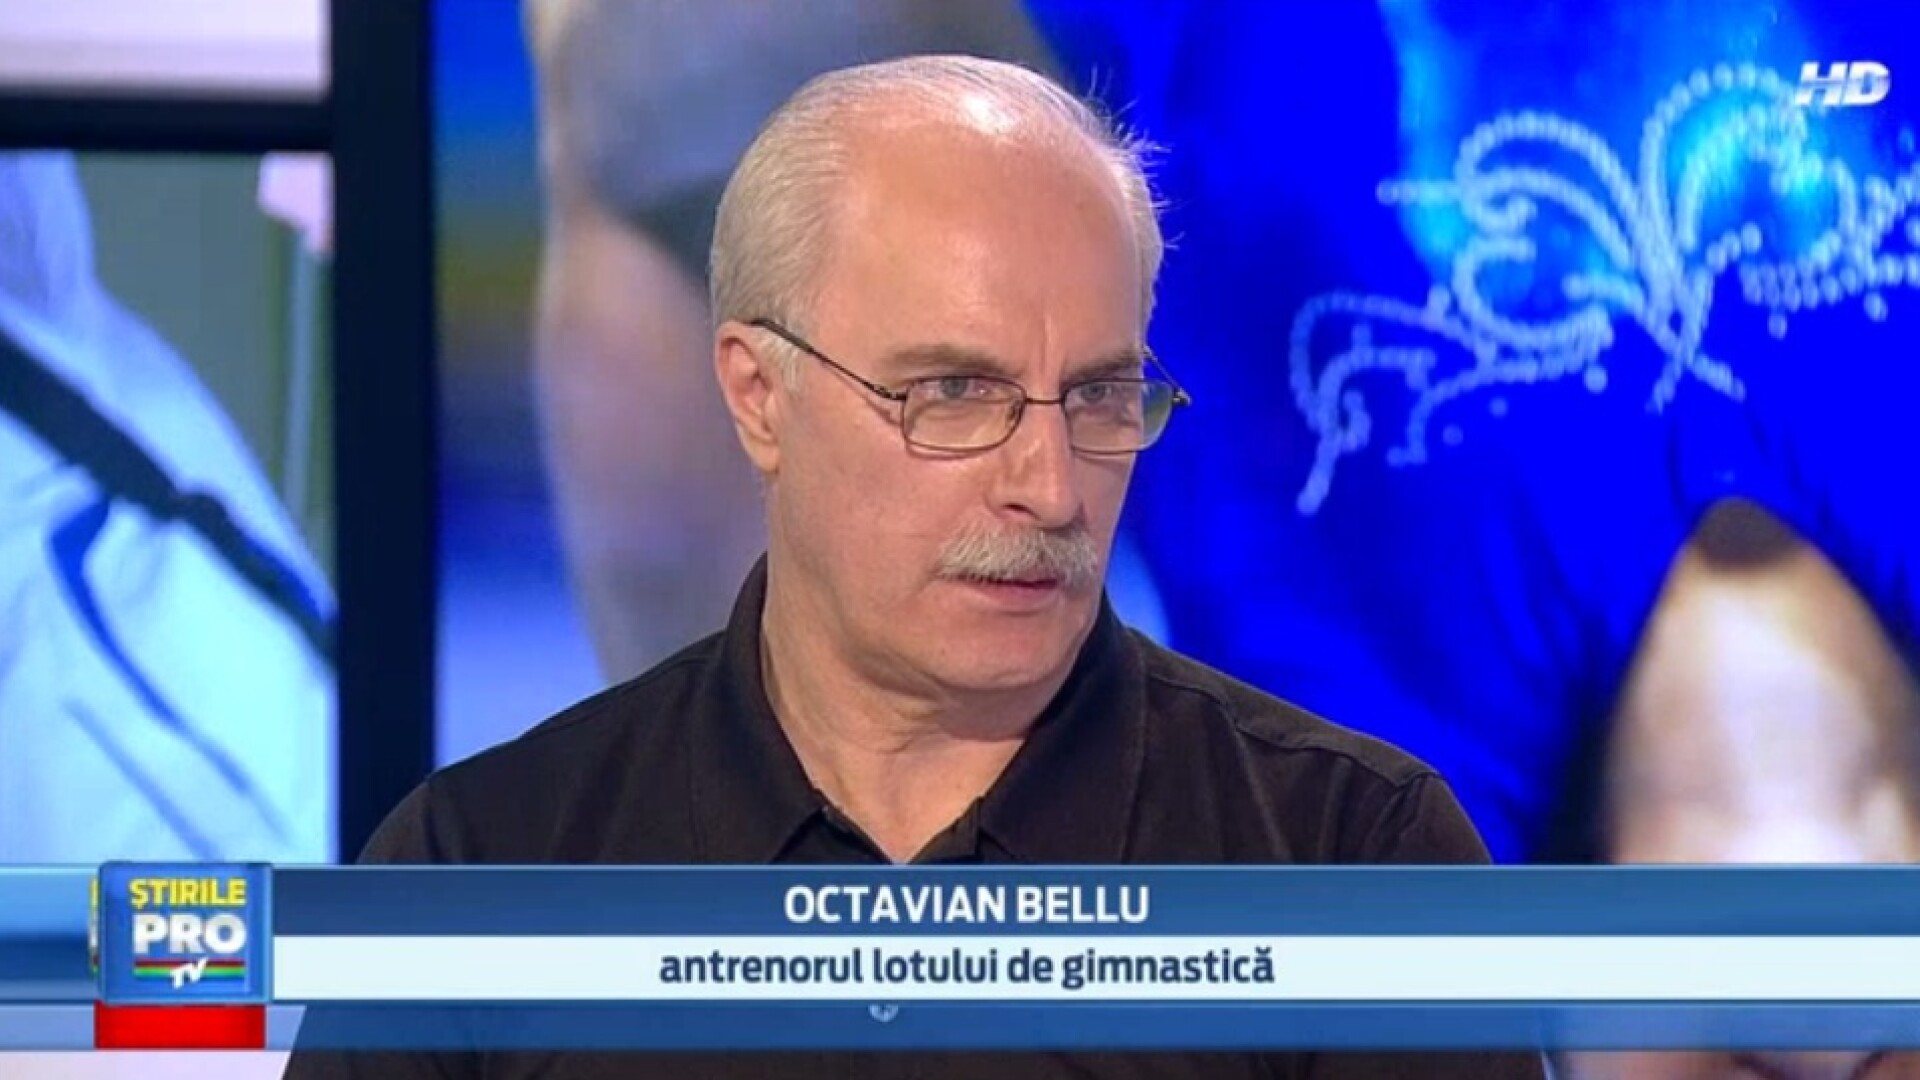 Octavian Bellu